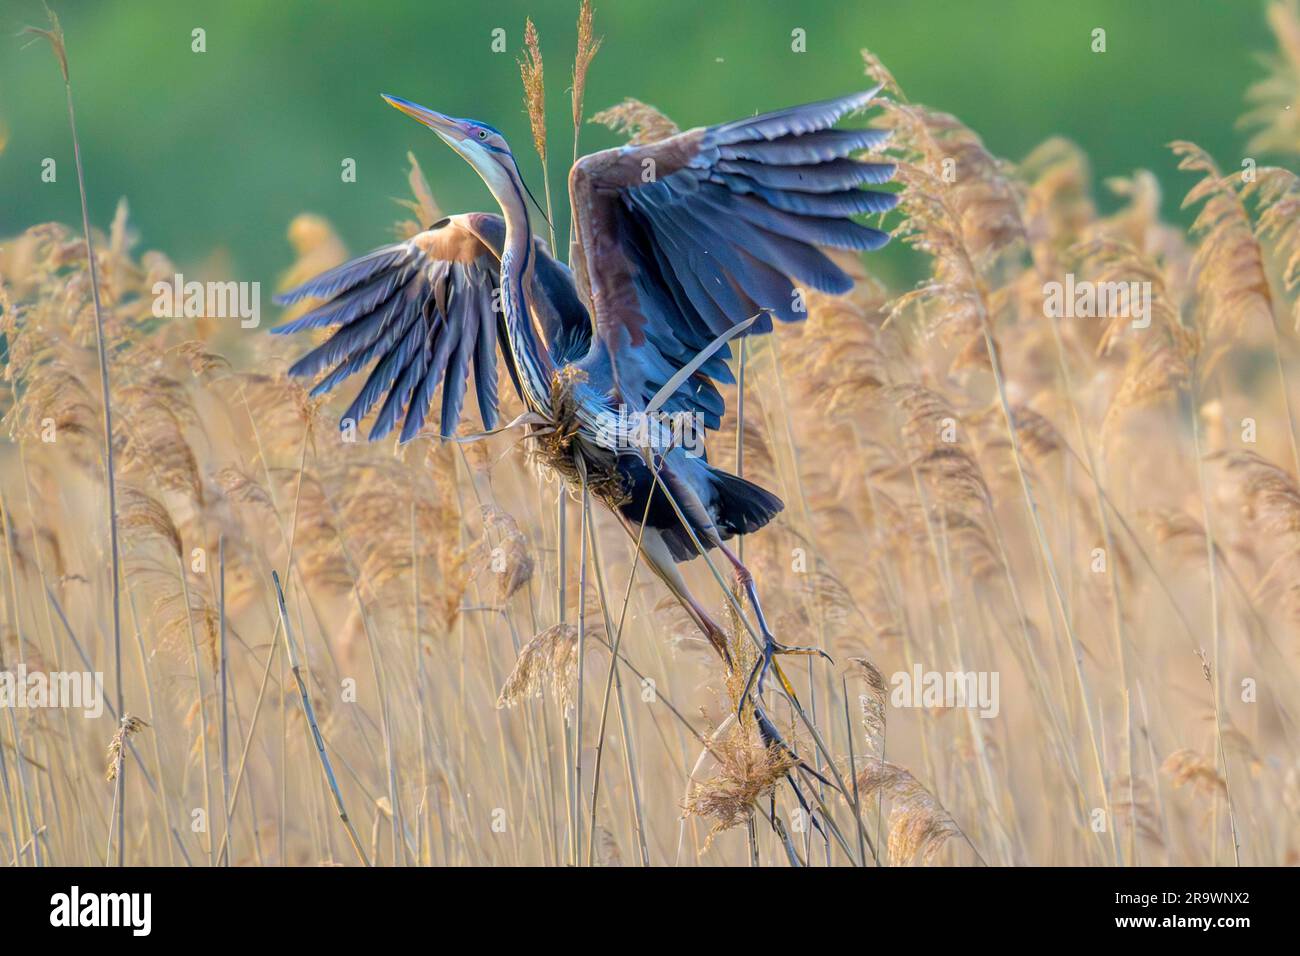 Purpurreiher (Ardea purpurea) startet aus dem Schilf, erwachsener Vogel, Waghaeusel, Baden-Württemberg, Deutschland Stockfoto